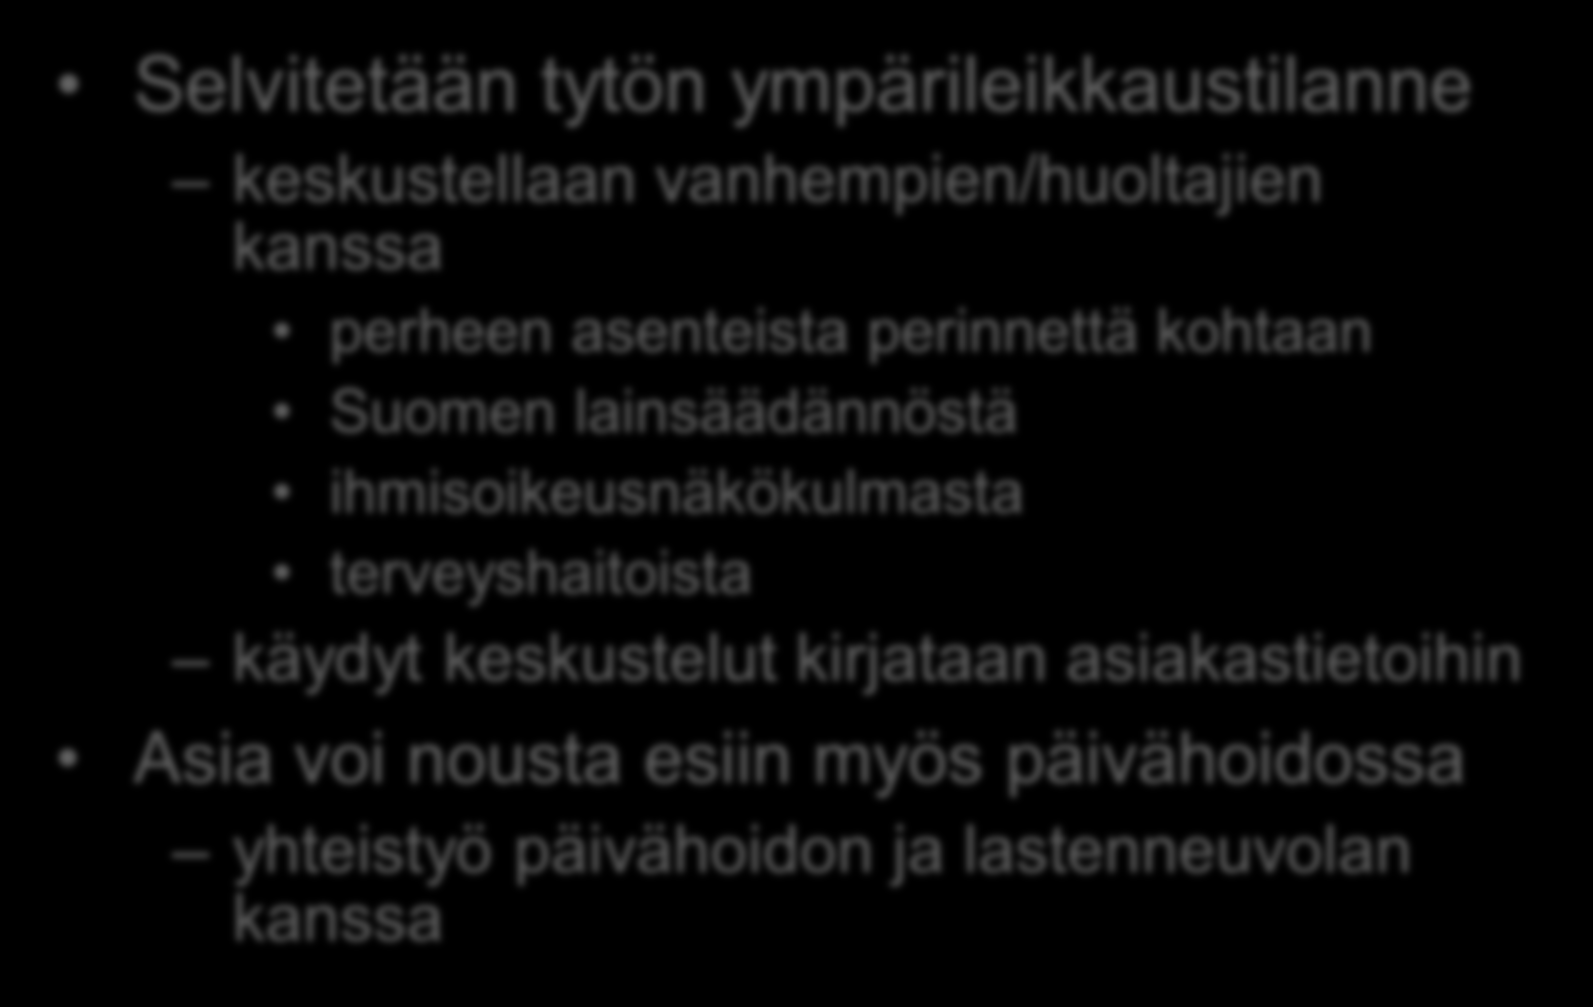 Lastenneuvola Selvitetään tytön ympärileikkaustilanne keskustellaan vanhempien/huoltajien kanssa perheen asenteista perinnettä kohtaan Suomen lainsäädännöstä